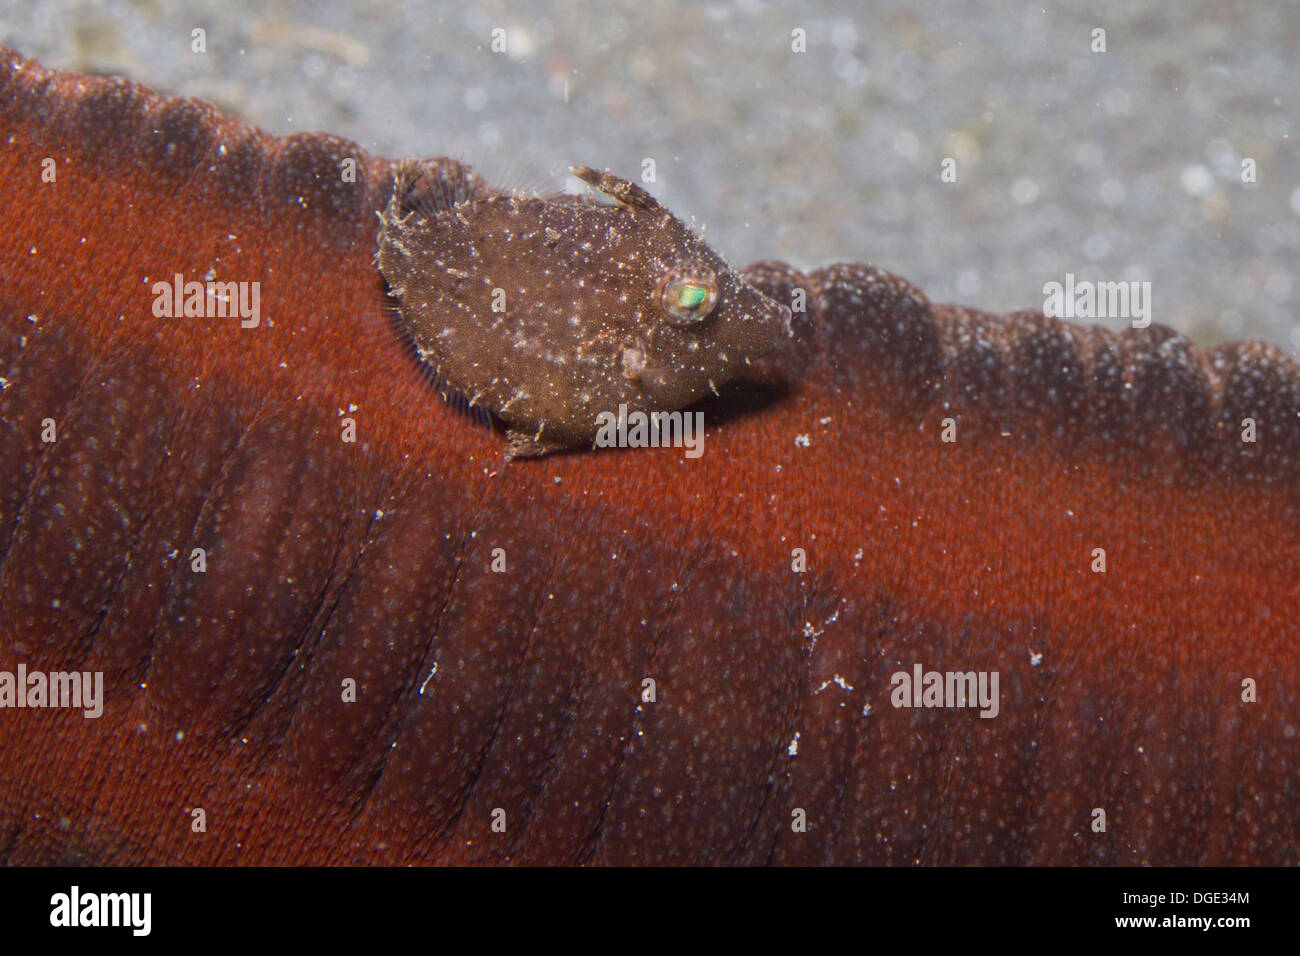 Petites balistes juvéniles tente d'h par ide en supposant que la coloration et natation près d'un concombre de mer.(Acreichthys sp.) Banque D'Images